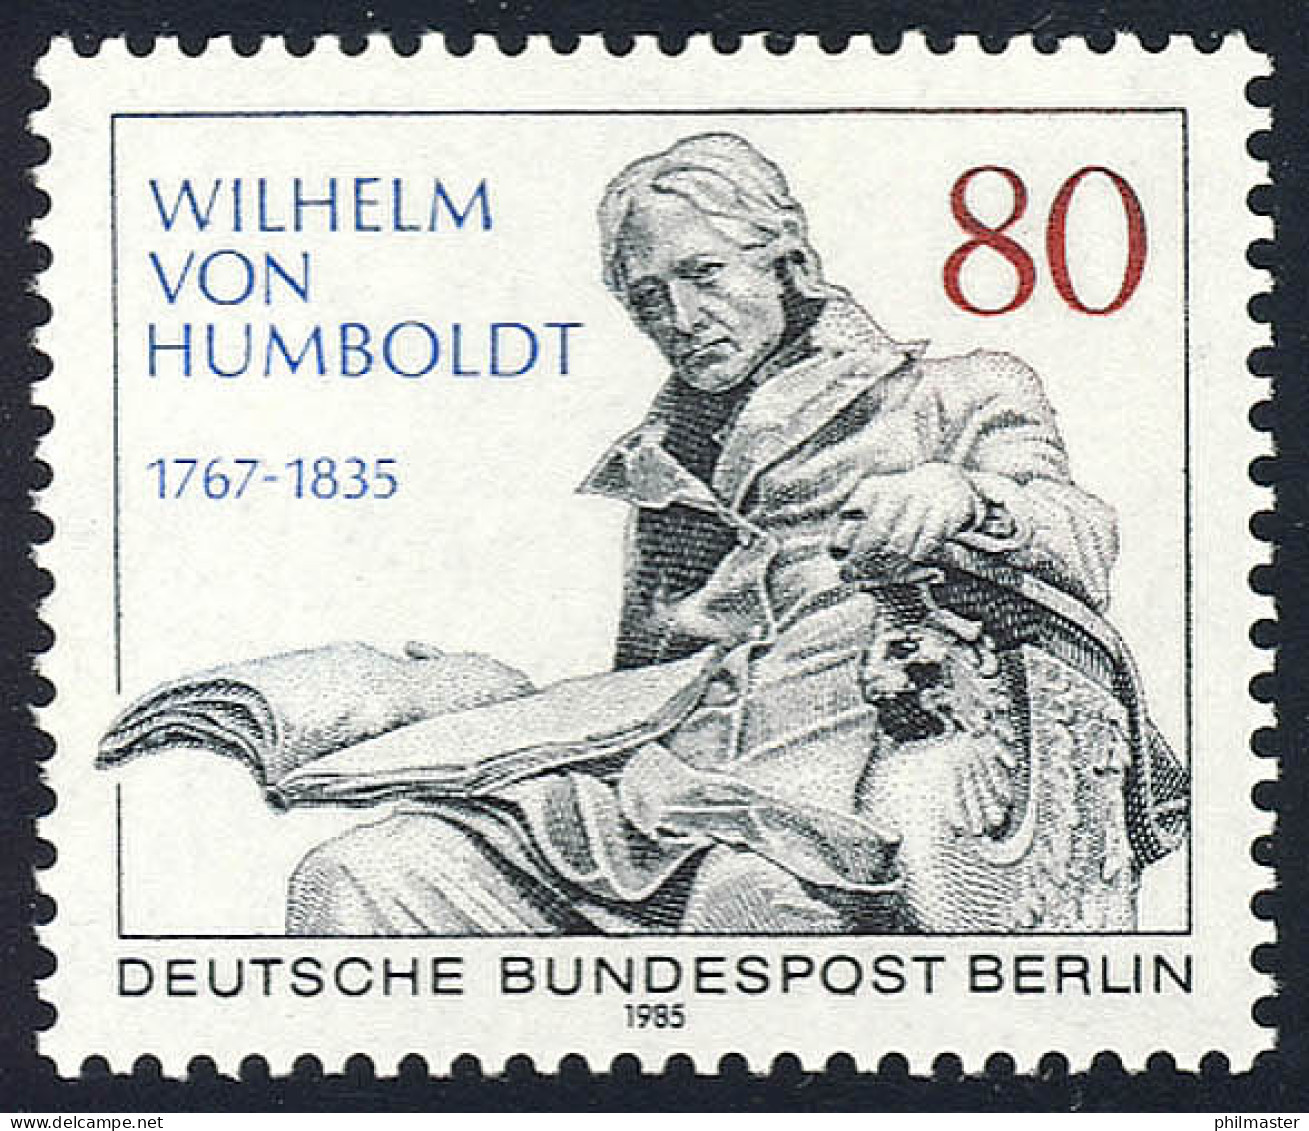 731 Wilhelm Freiherr Von Humboldt ** - Nuevos